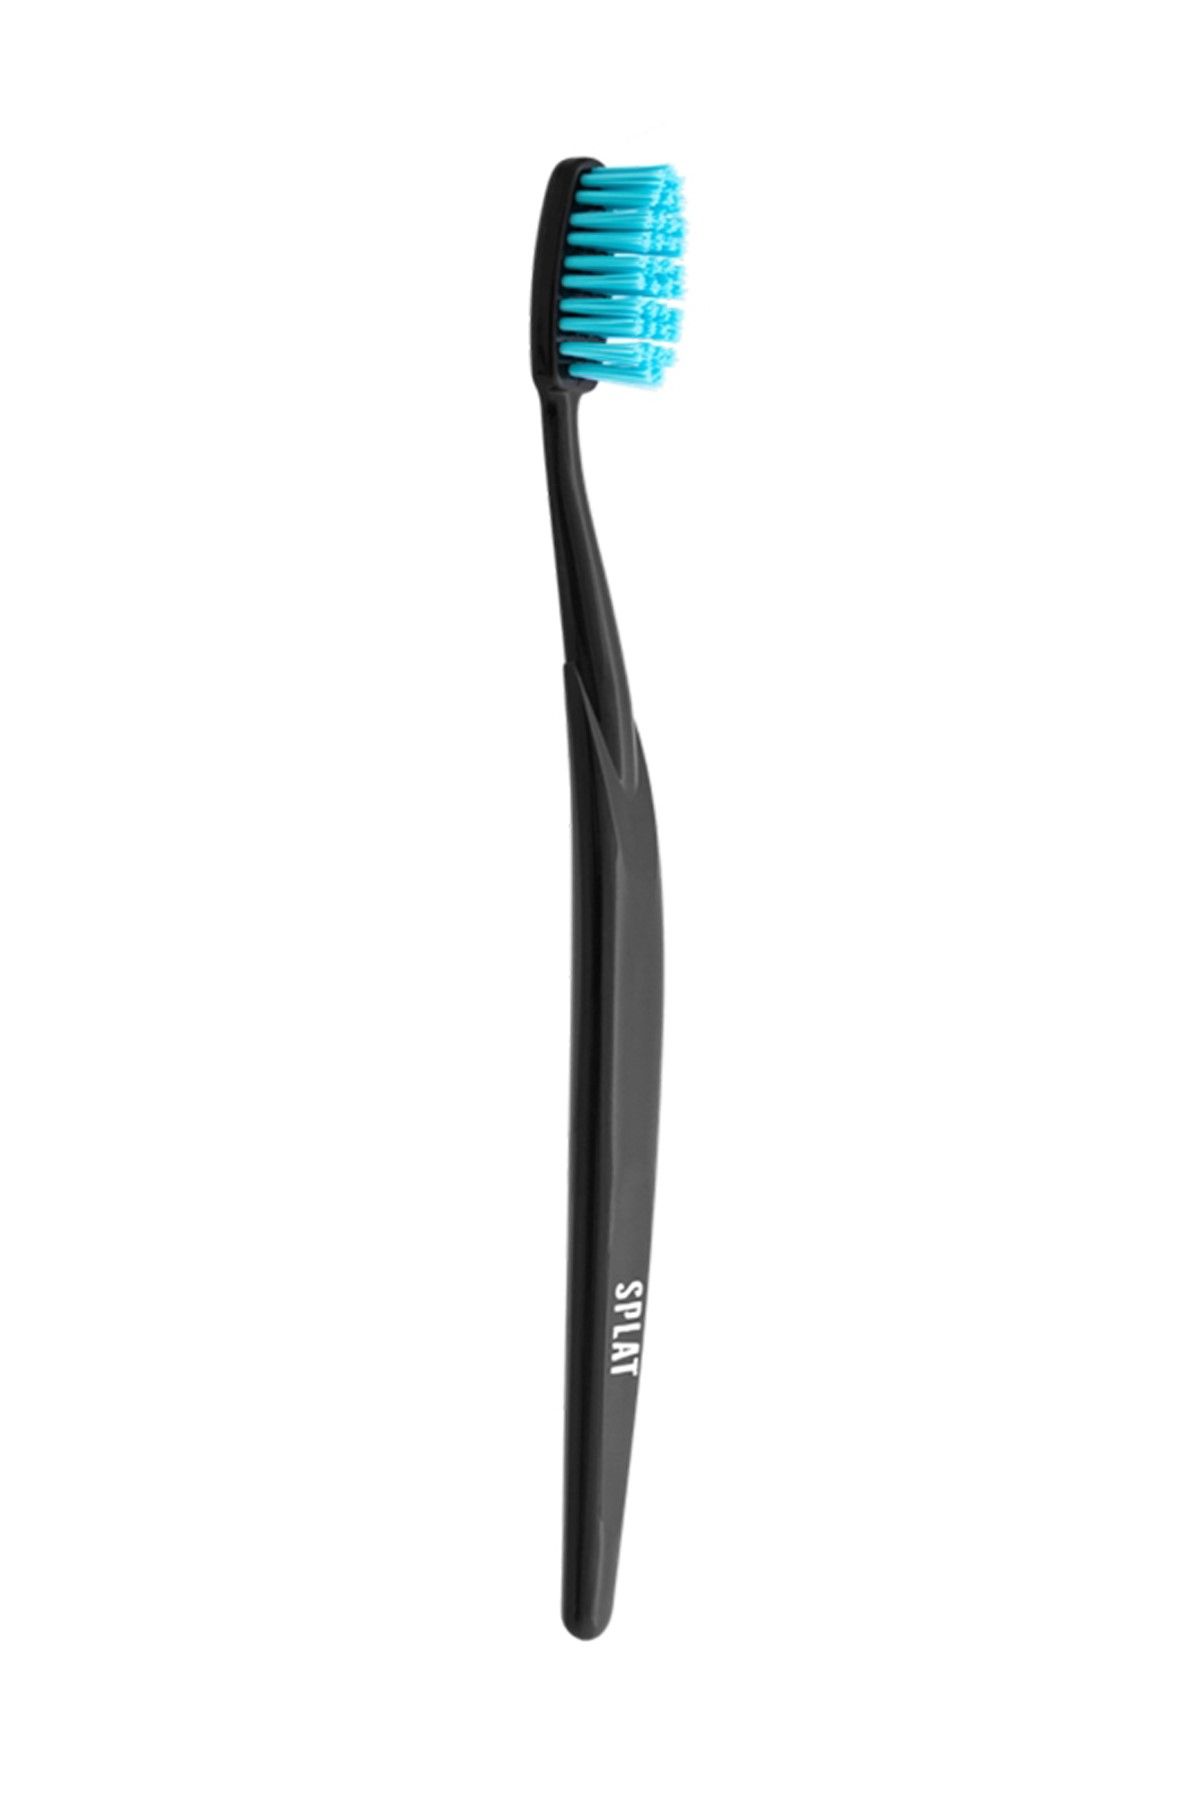 Splat Medium Whitening Diş Fırçası Mavi 4603014002570